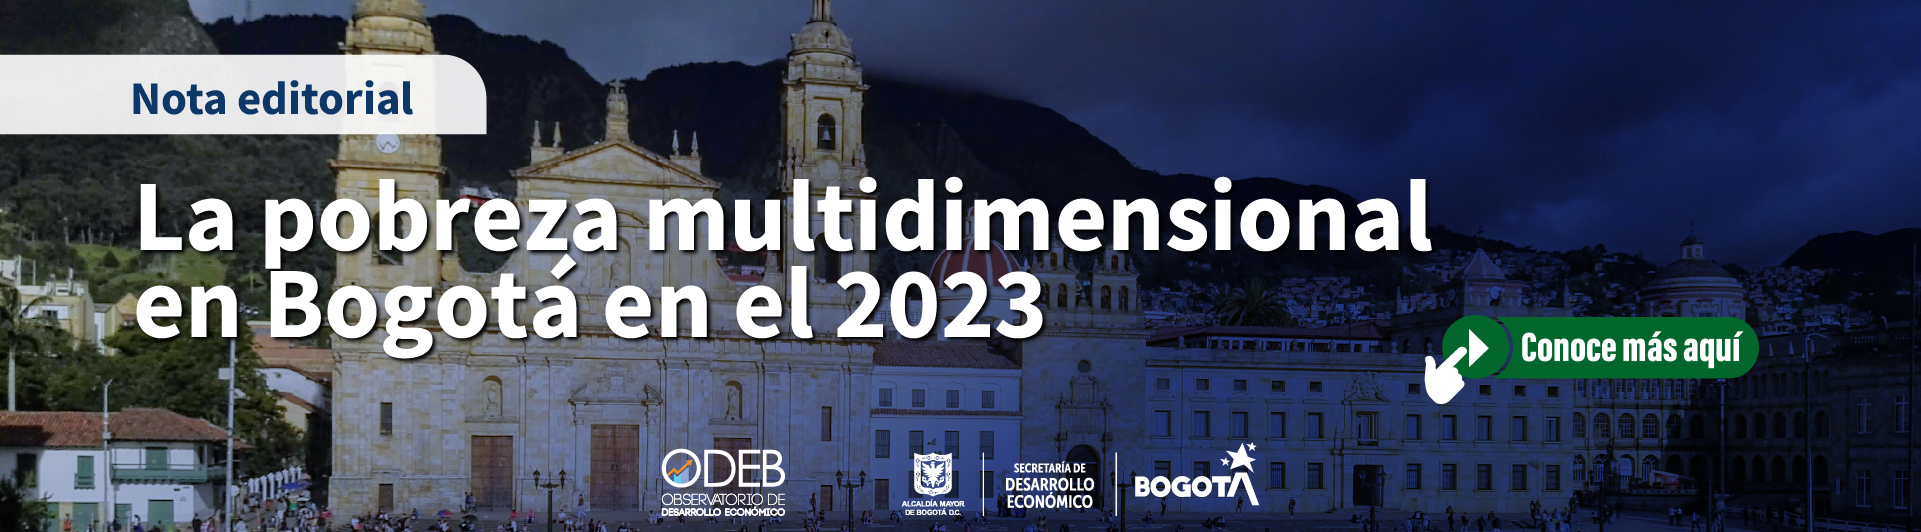 La pobreza multidimensional en Bogotá en el 2023